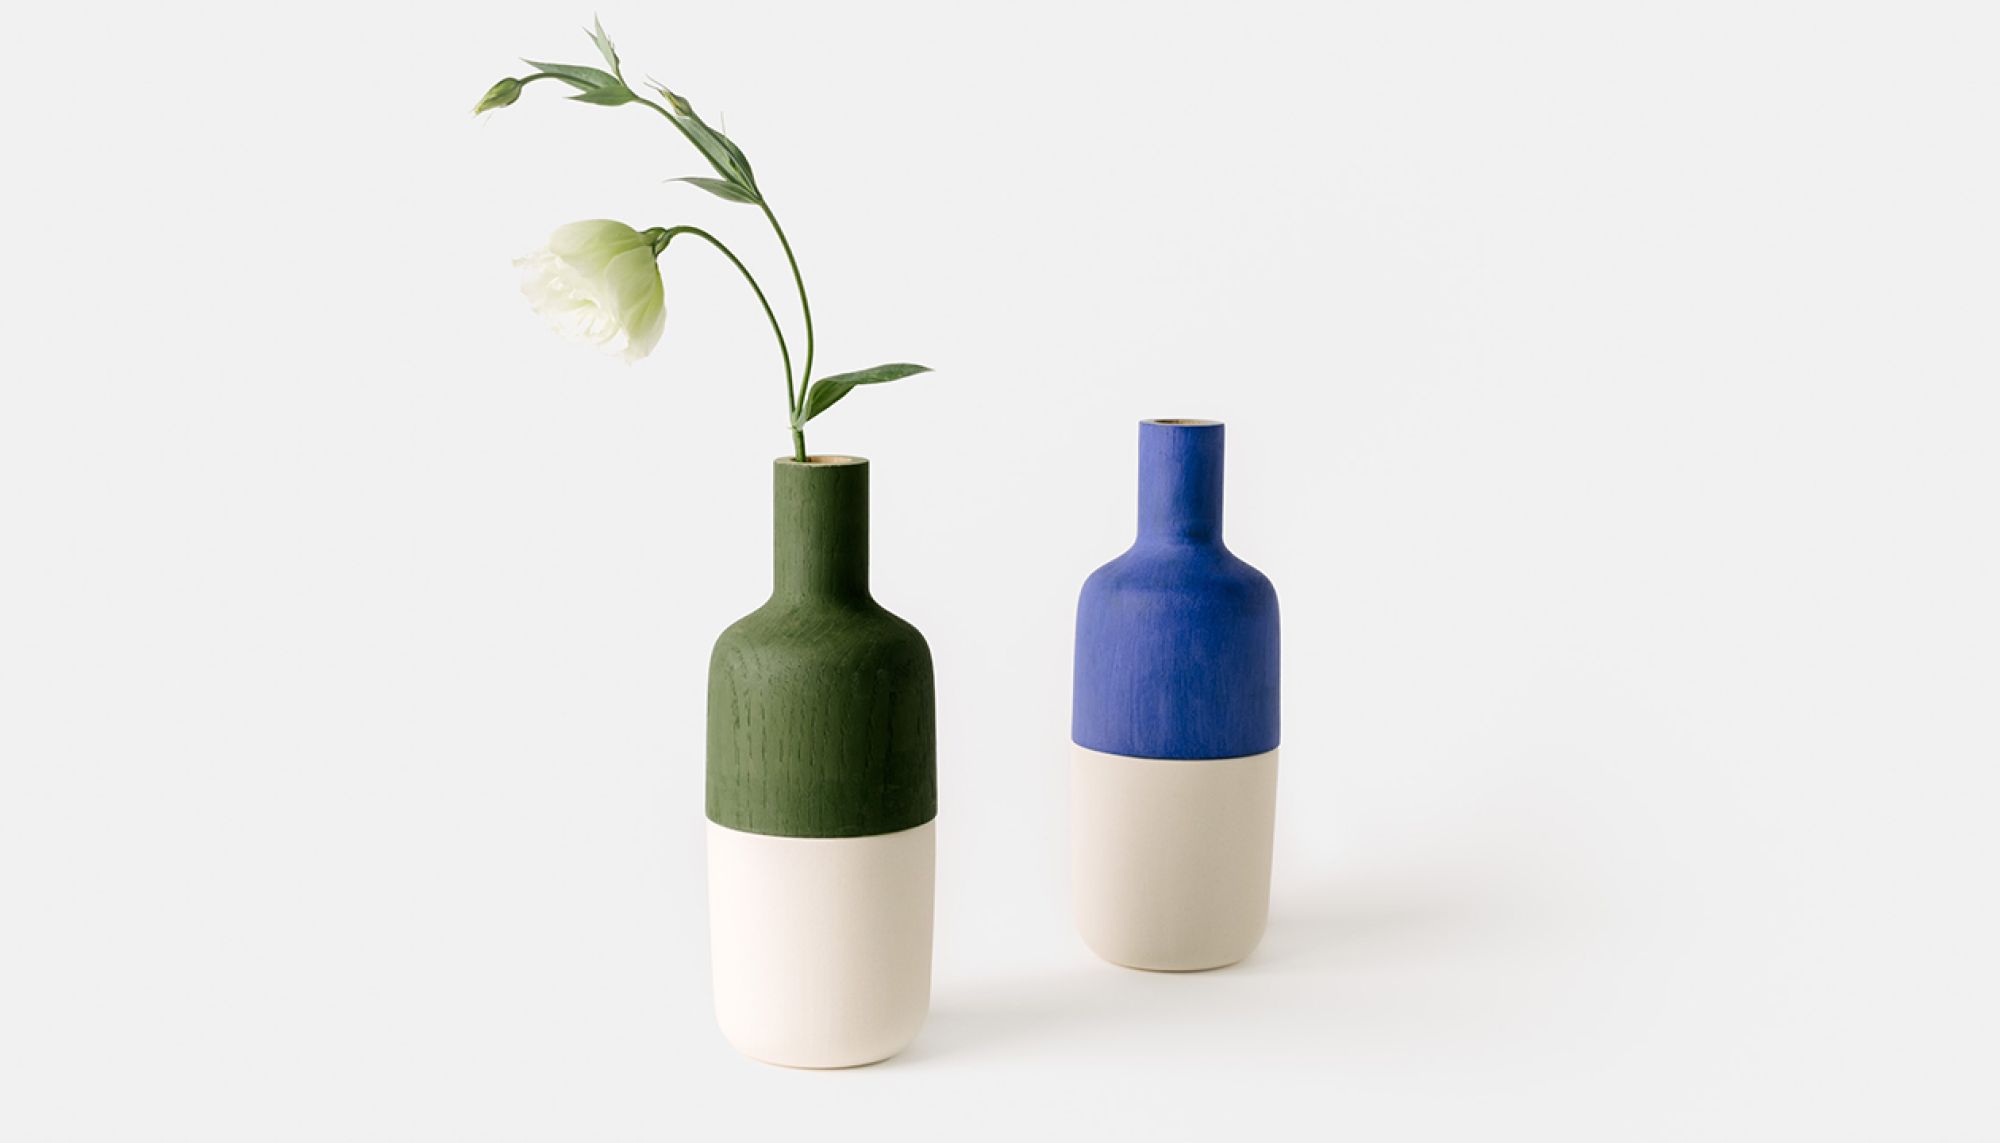 Ceramic Marais Vases by Otis College alum Melanie Abrantes